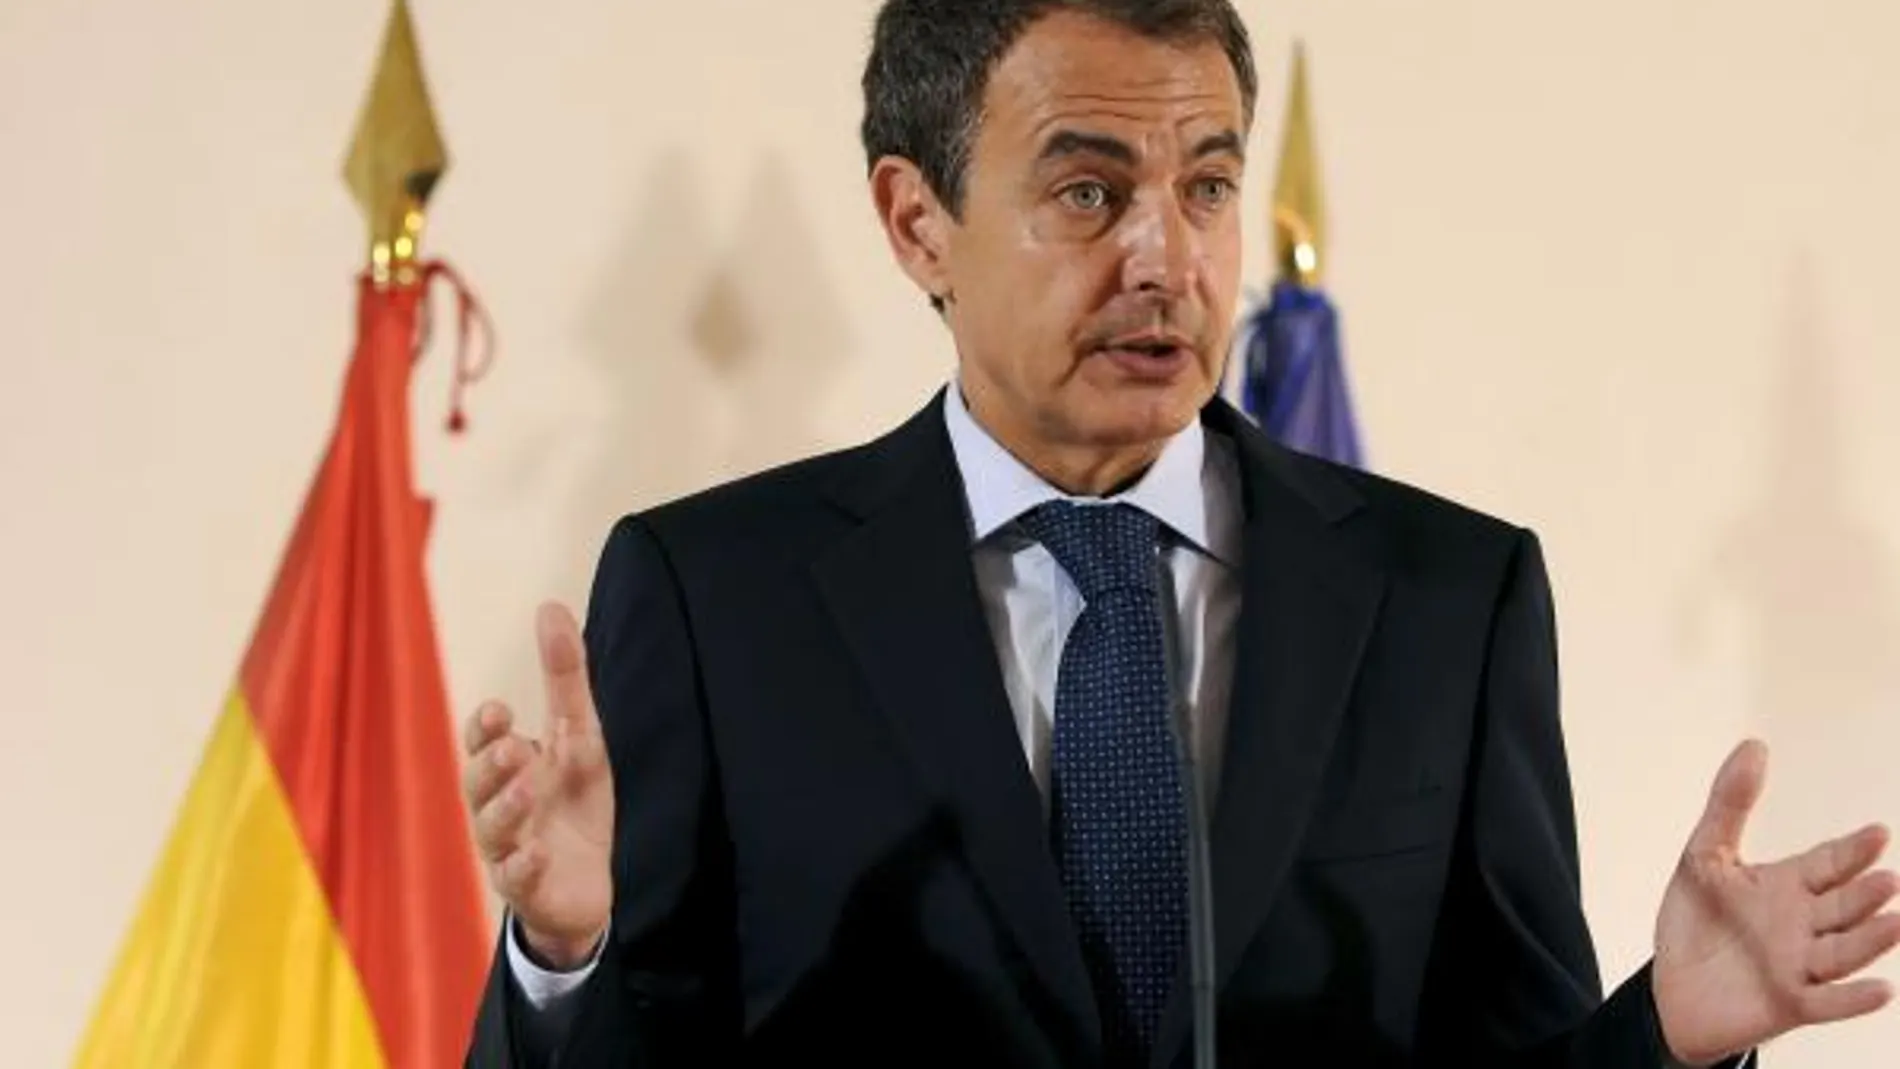 Zapatero convocova a las construtoras para abordar el recorte de obra pública